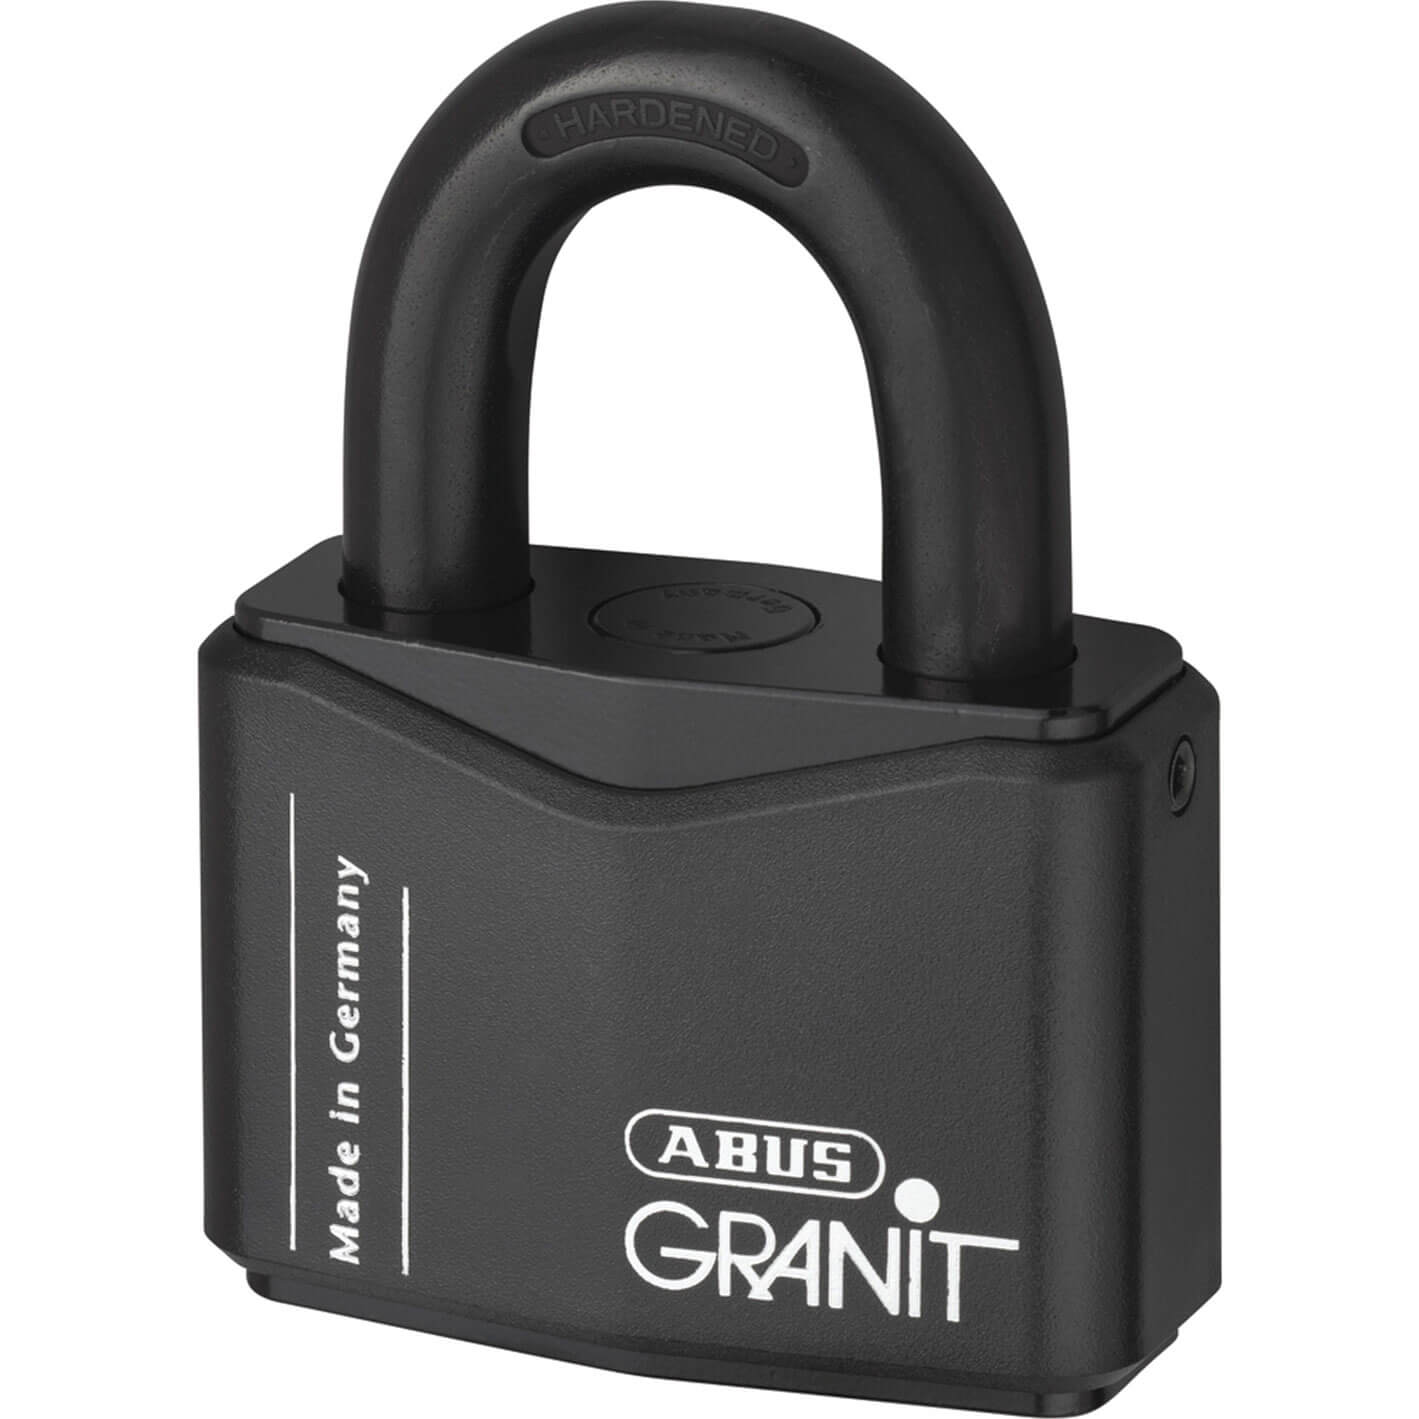 Abus Granit Plus Padlock 70mm Standard